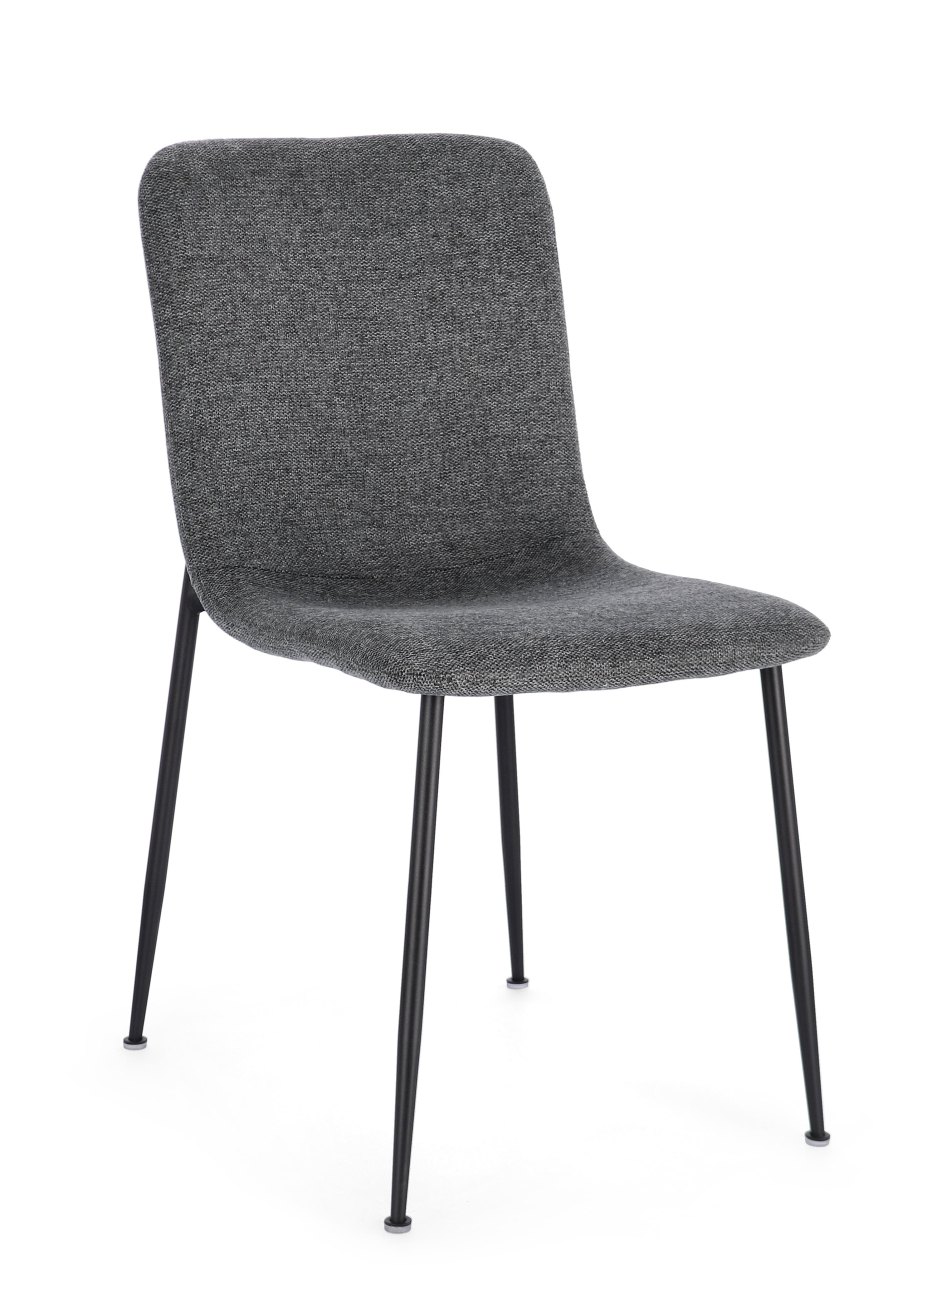 Der Esszimmerstuhl Rinas überzeugt mit seinem modernen Stil. Gefertigt wurde er aus Stoff, welcher einen dunkelgrauen Farbton besitzt. Das Gestell ist aus Metall und hat eine schwarze Farbe. Der Stuhl besitzt eine Sitzhöhe von 46 cm.